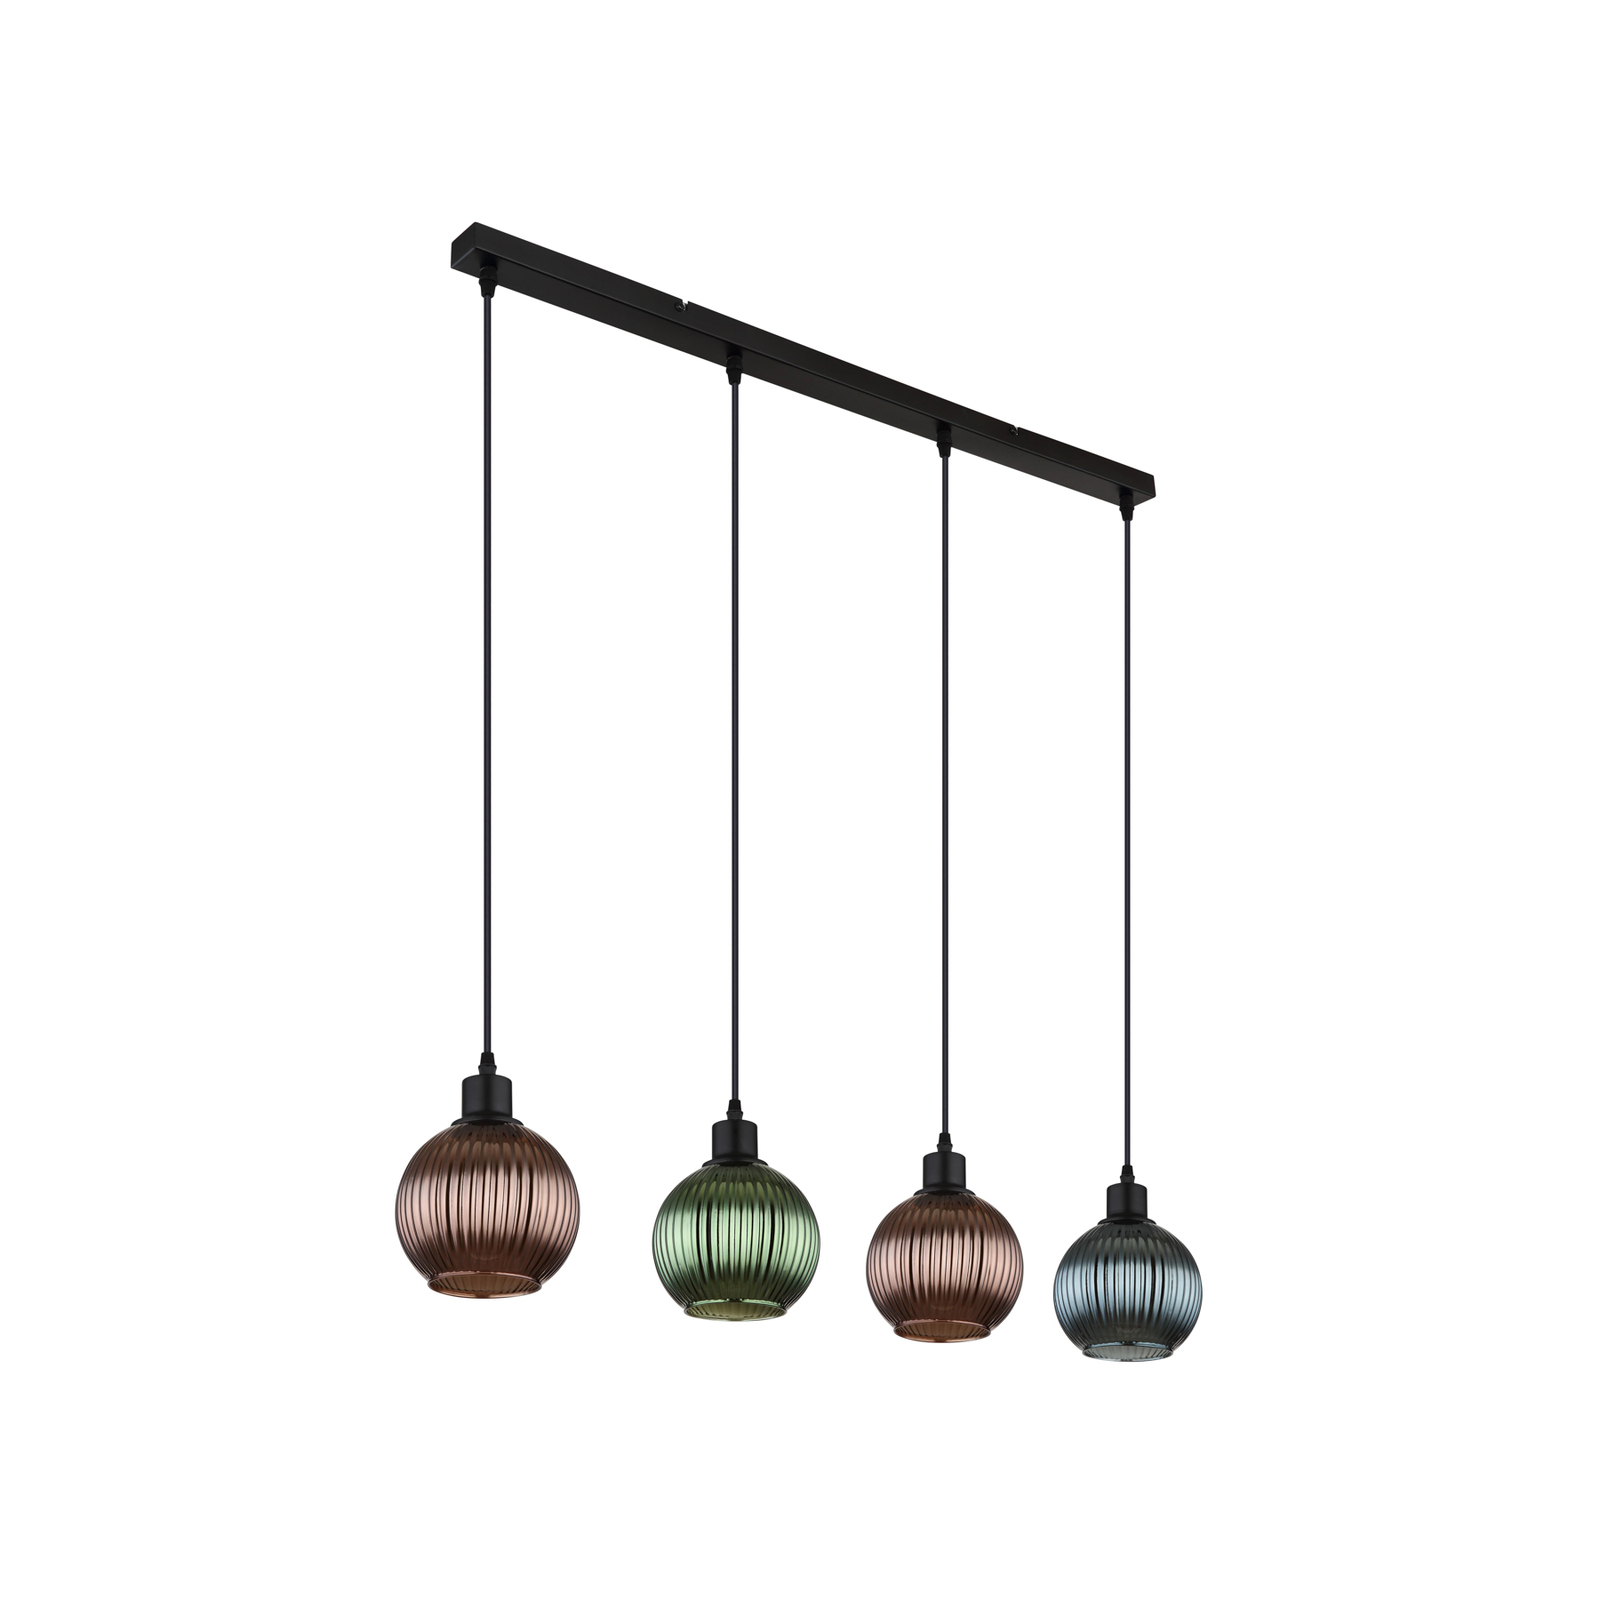 Závěsná lampa Zumba, zelená/bronzová/benzínová, 90 cm, 4 světla, sklo